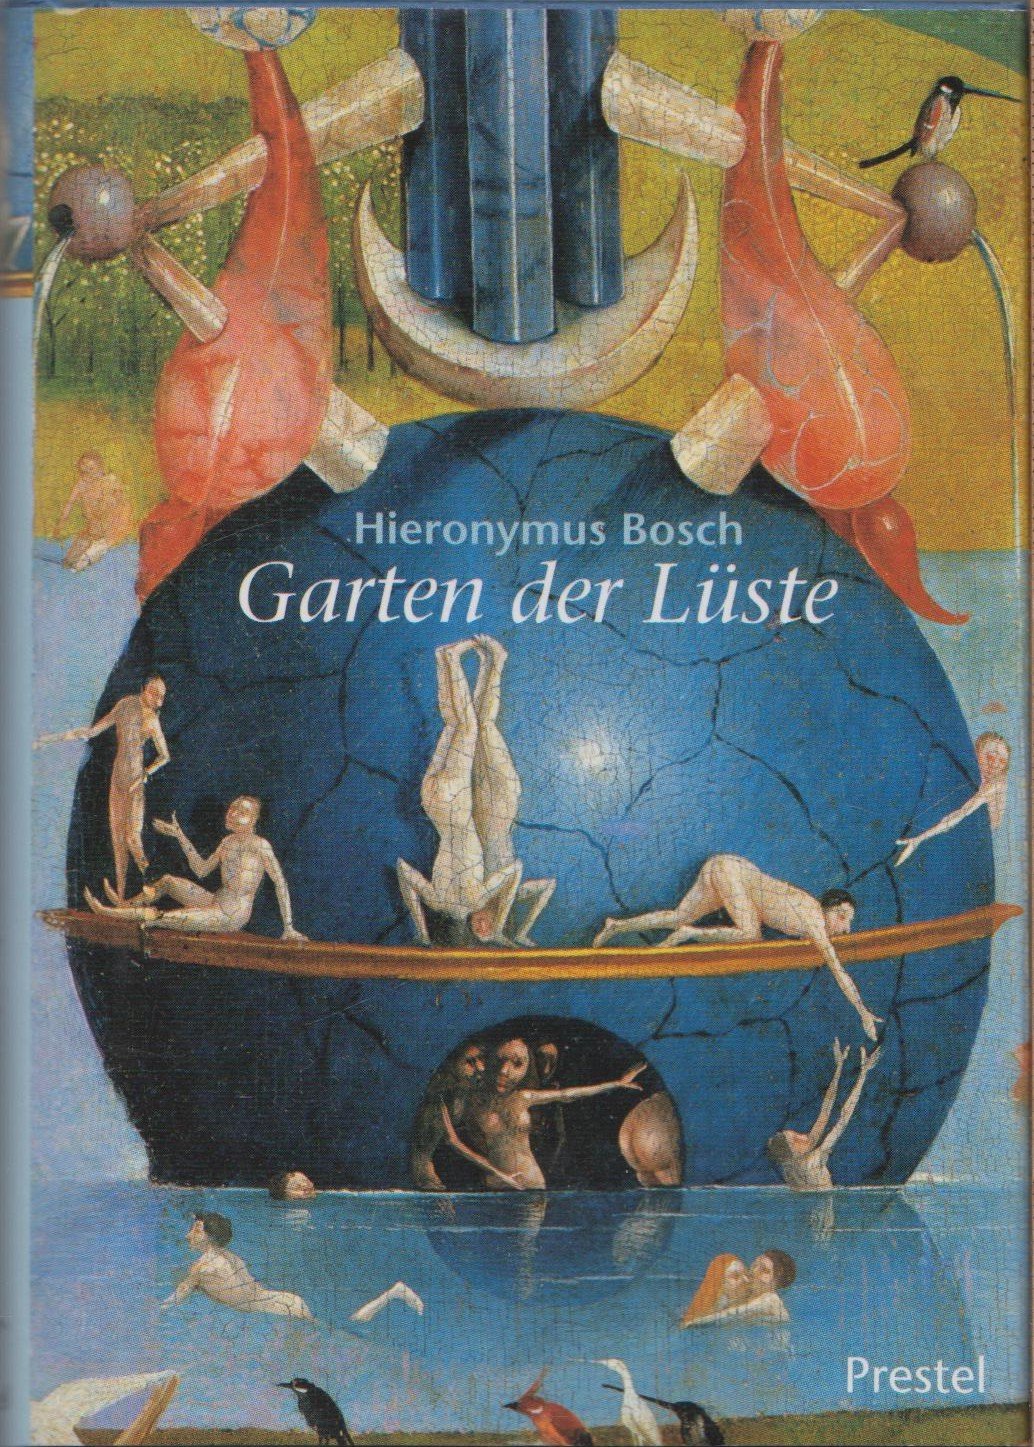 Isbn 9783791326627 Prestel Minis Hieronymus Bosch Der Garten Der Lüste Neu And Gebraucht Kaufen 